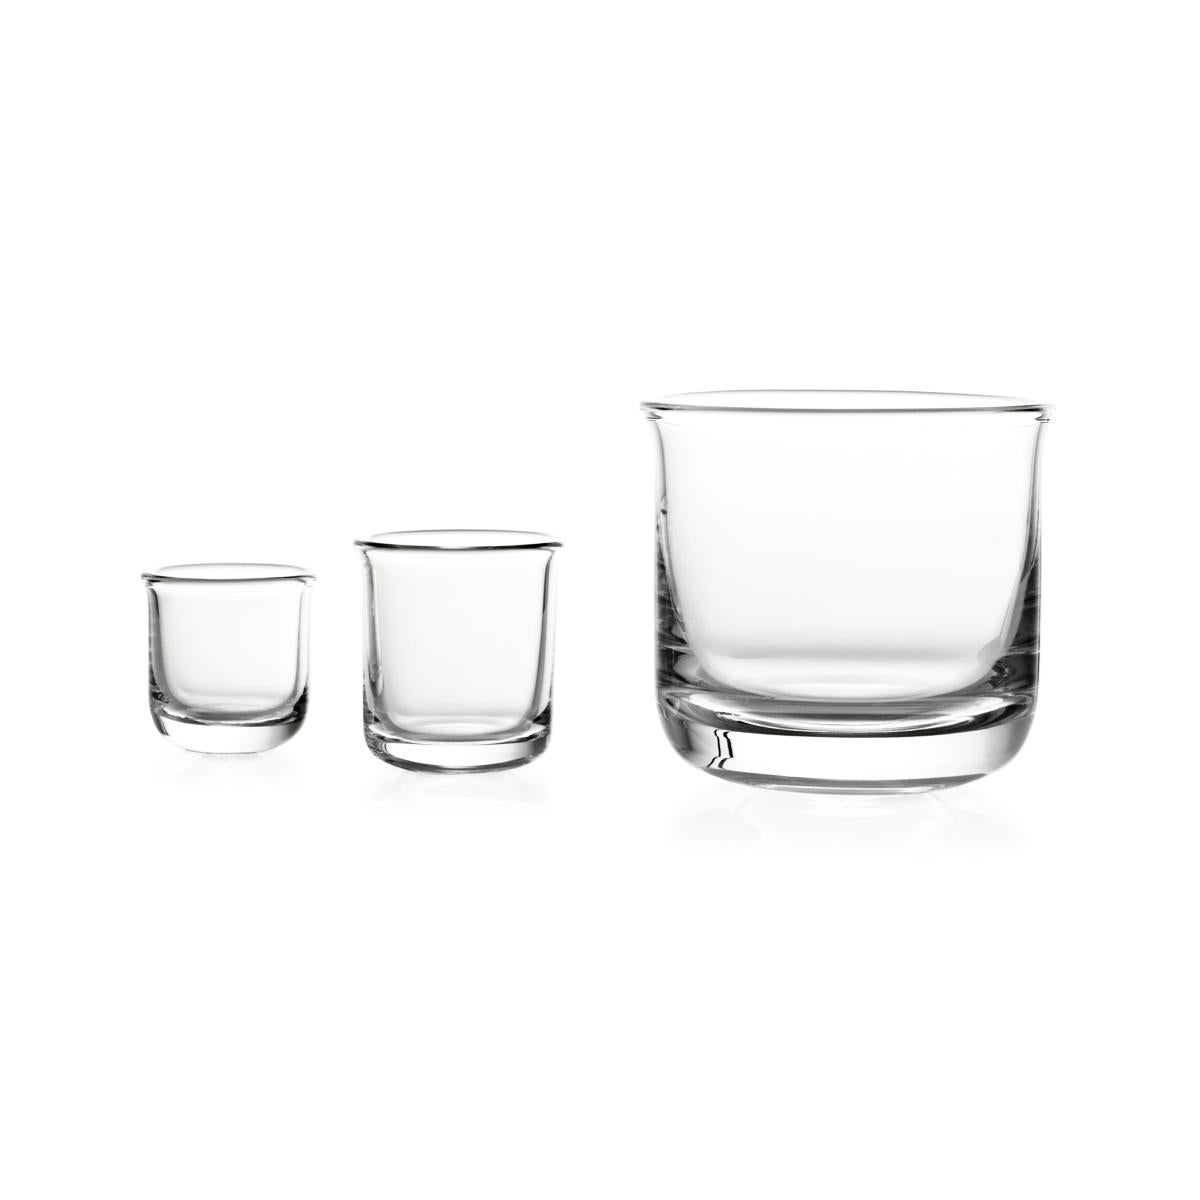 Whiskyglas aus mundgeblasenem Glas in einer Form. Die Collection'S Aldo ist eine Familie von Gläsern für die Verkostung von Likören. Die handliche und leicht ausgestellte Form ermöglicht es, die Aromen optimal wahrzunehmen, so dass der Moment des